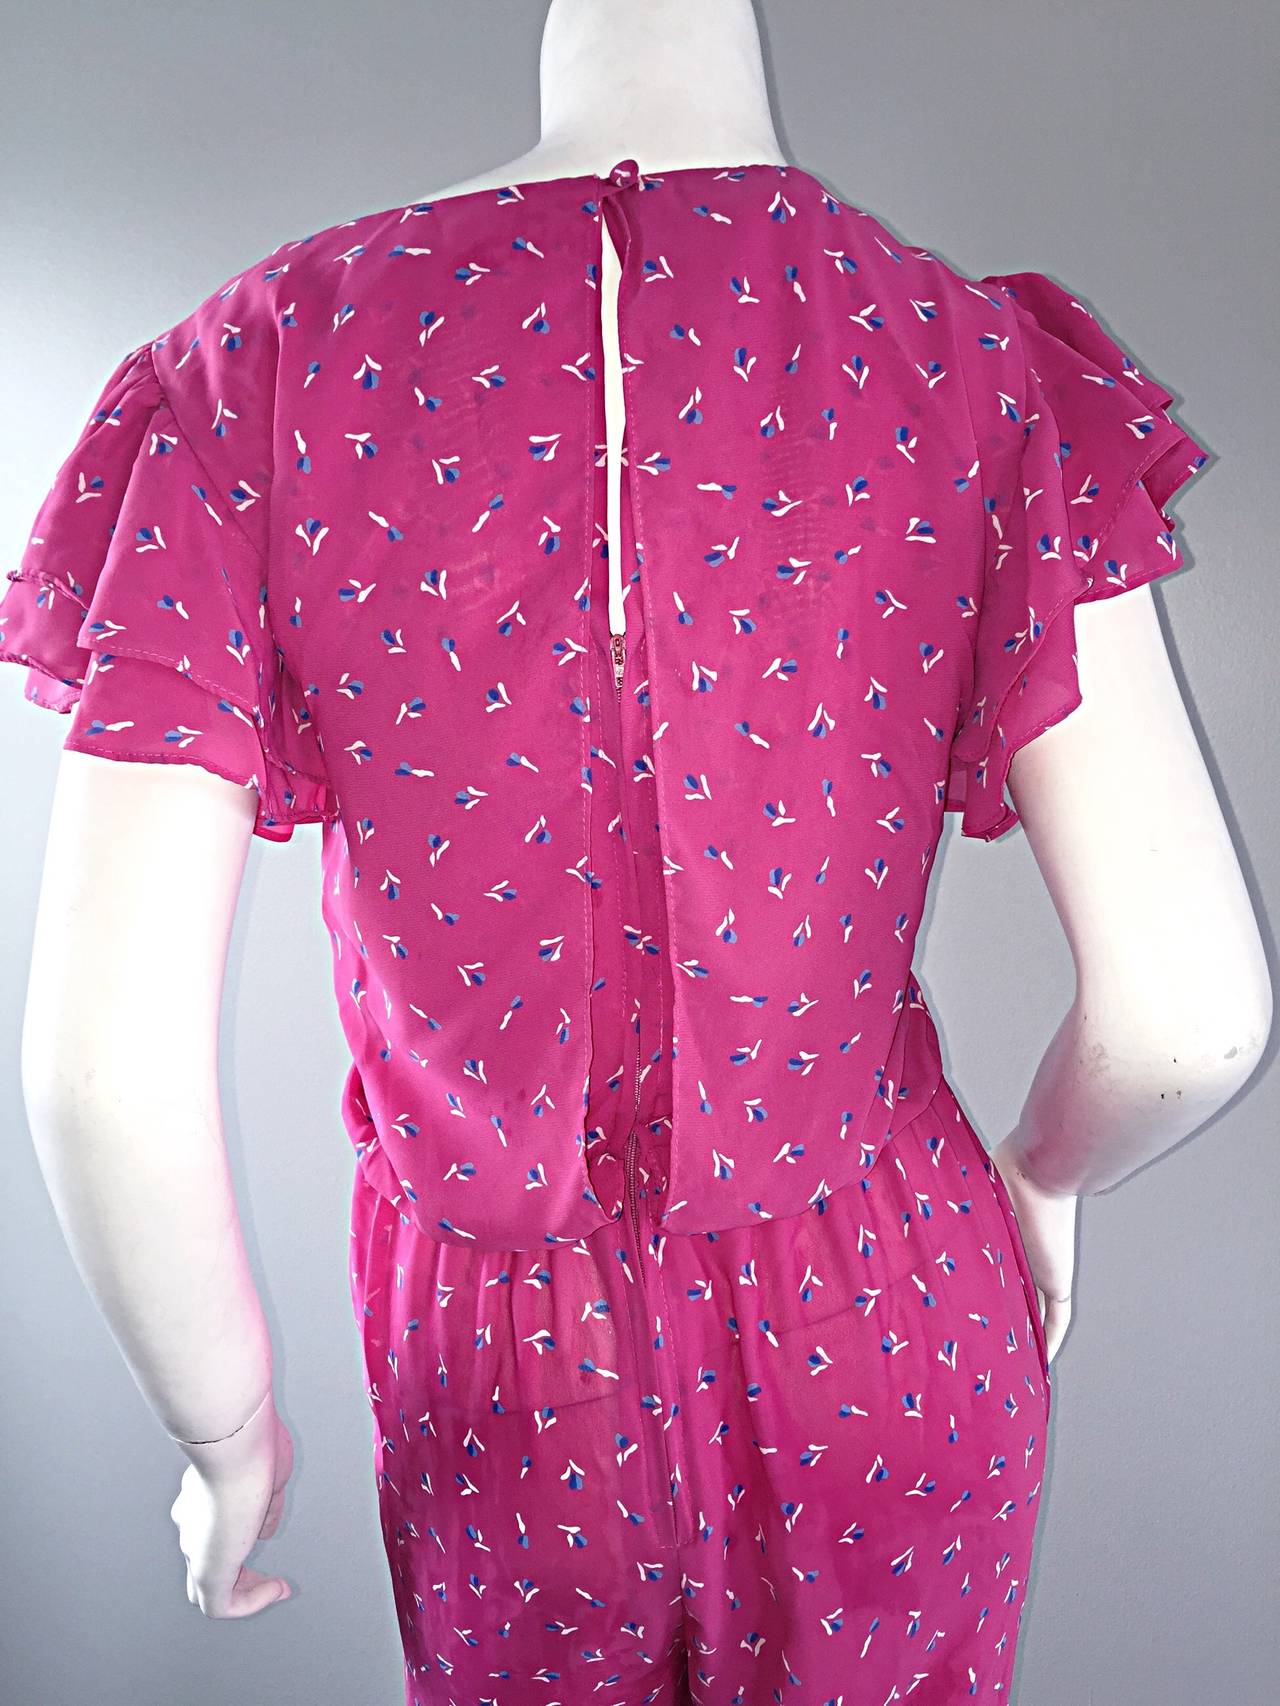 Incredible Vintage Pink Boho Jumpsuit, w/ Ruffles + Flowers / Roses 2